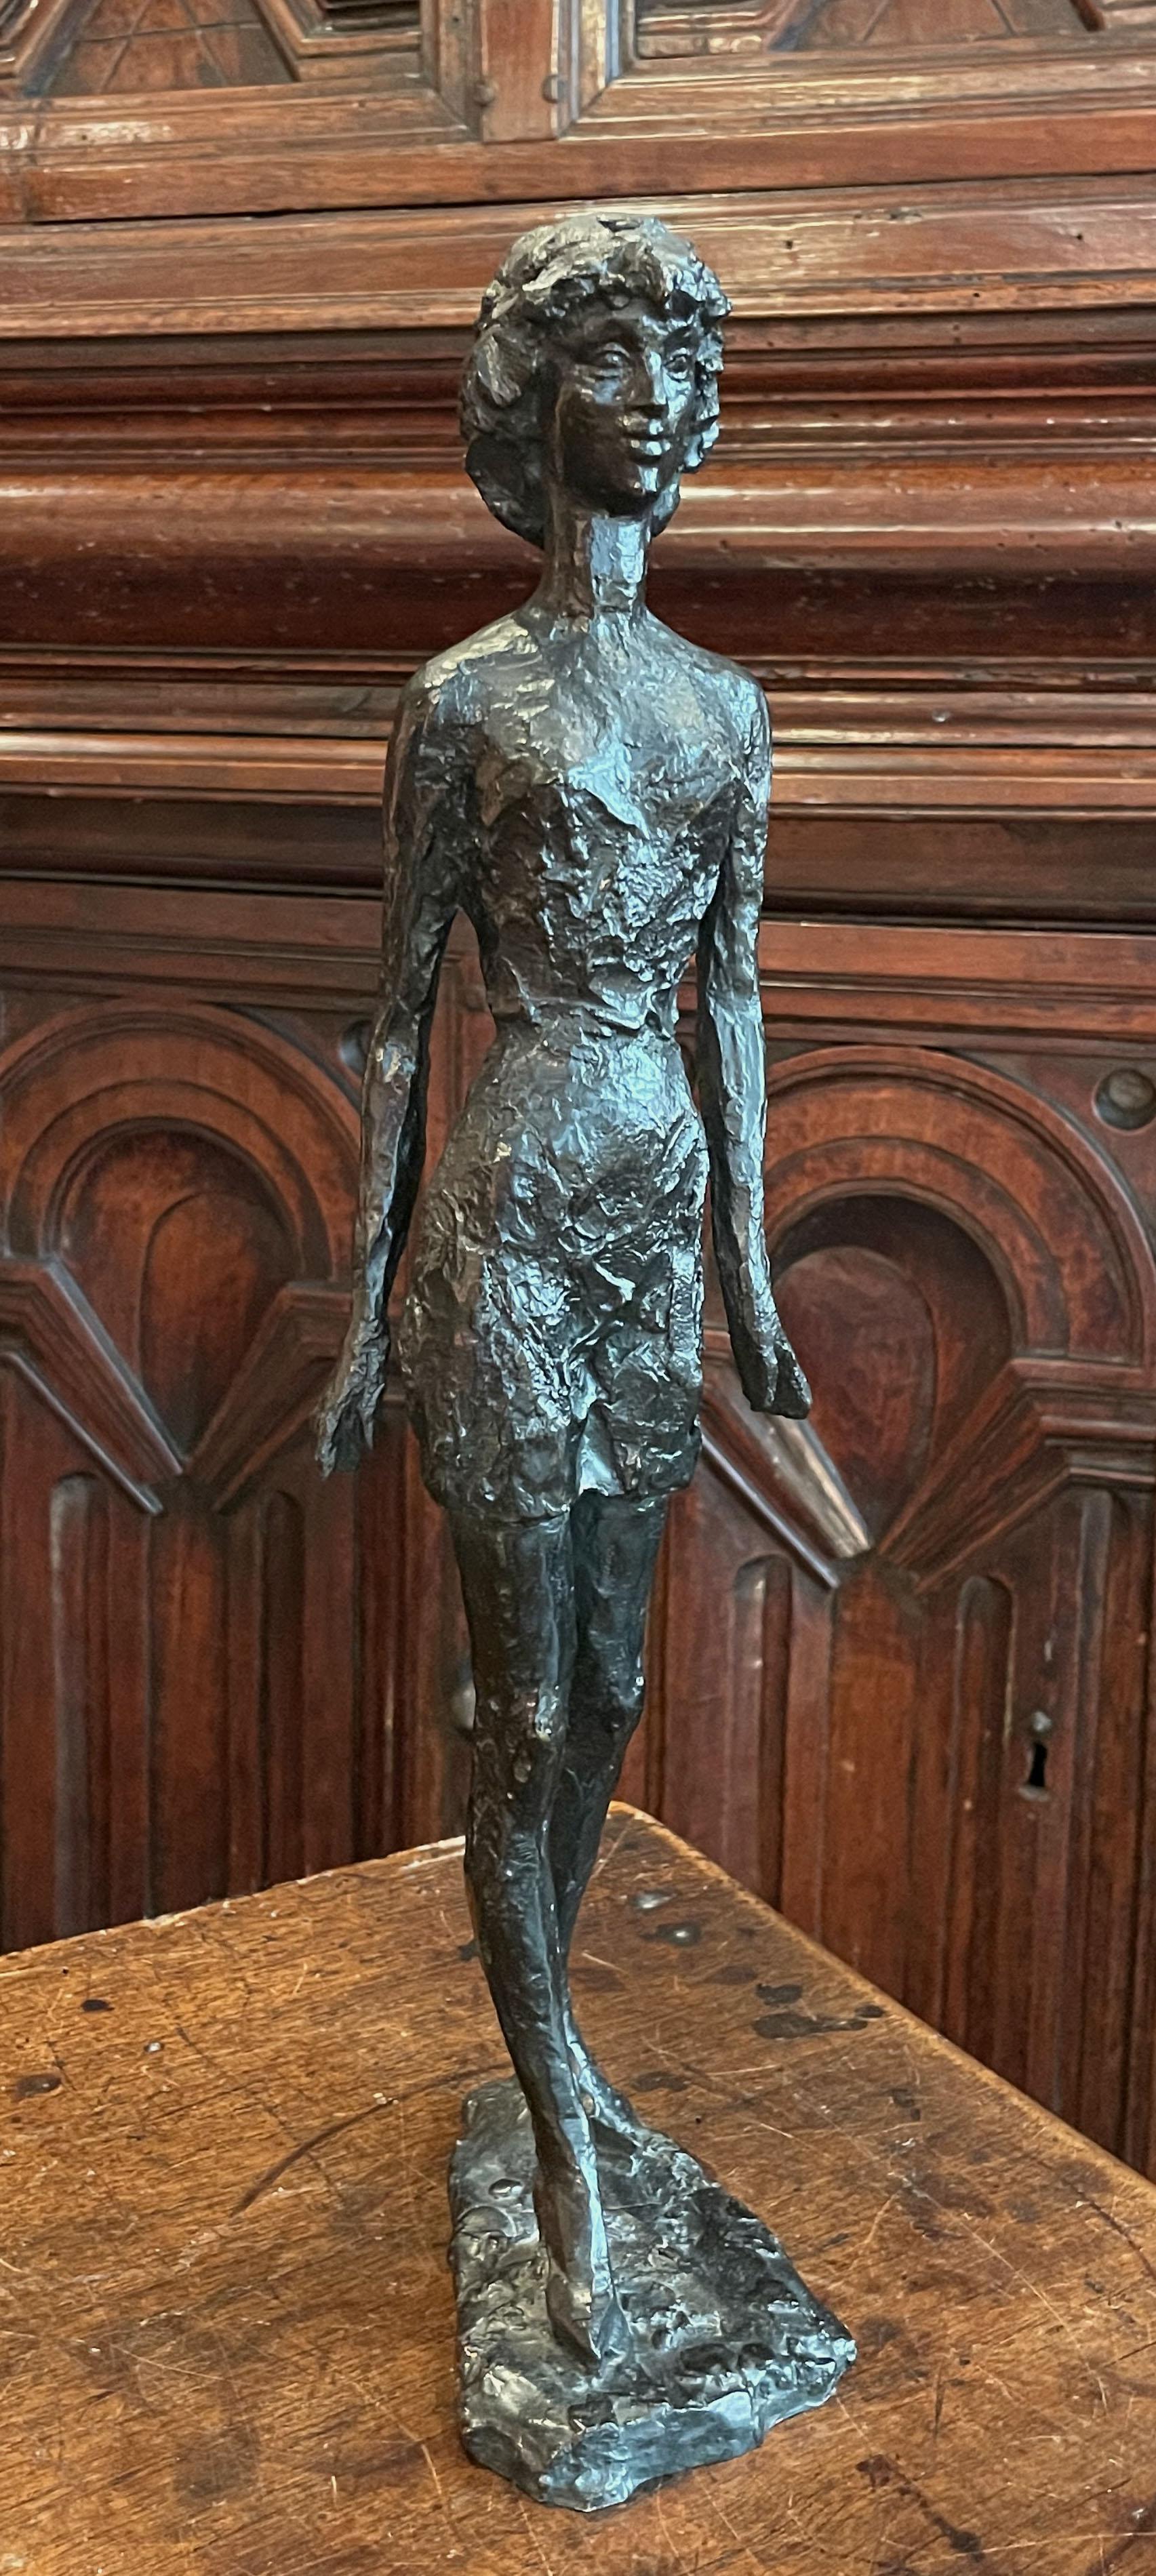 Jeune femme, 1967

Sculpture en bronze, cire perdue
Signé 